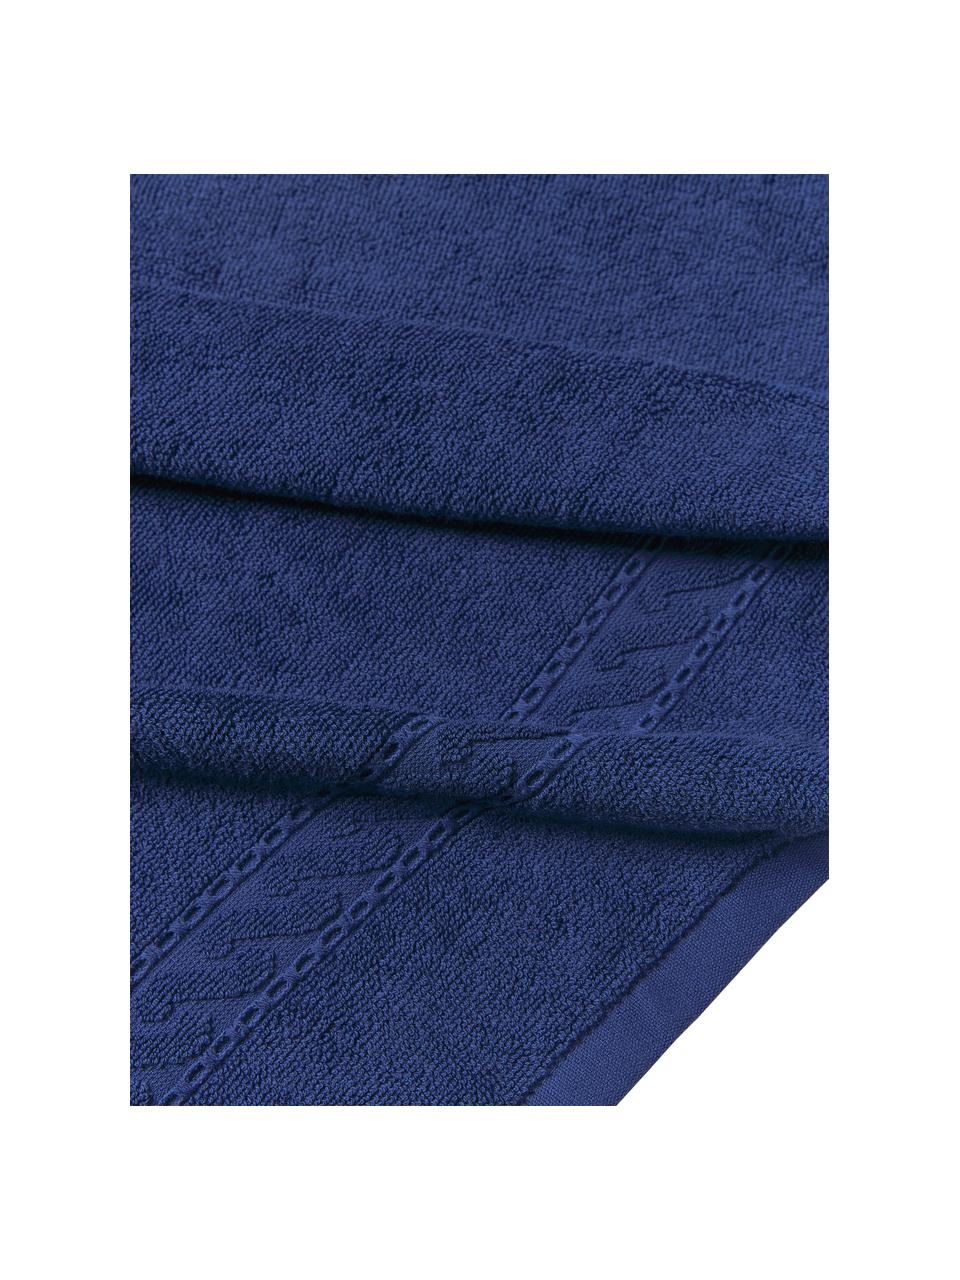 Handdoek Cordelia, Donkerblauw, Gastendoekje, B 30 x L 50 cm, 2 stuks